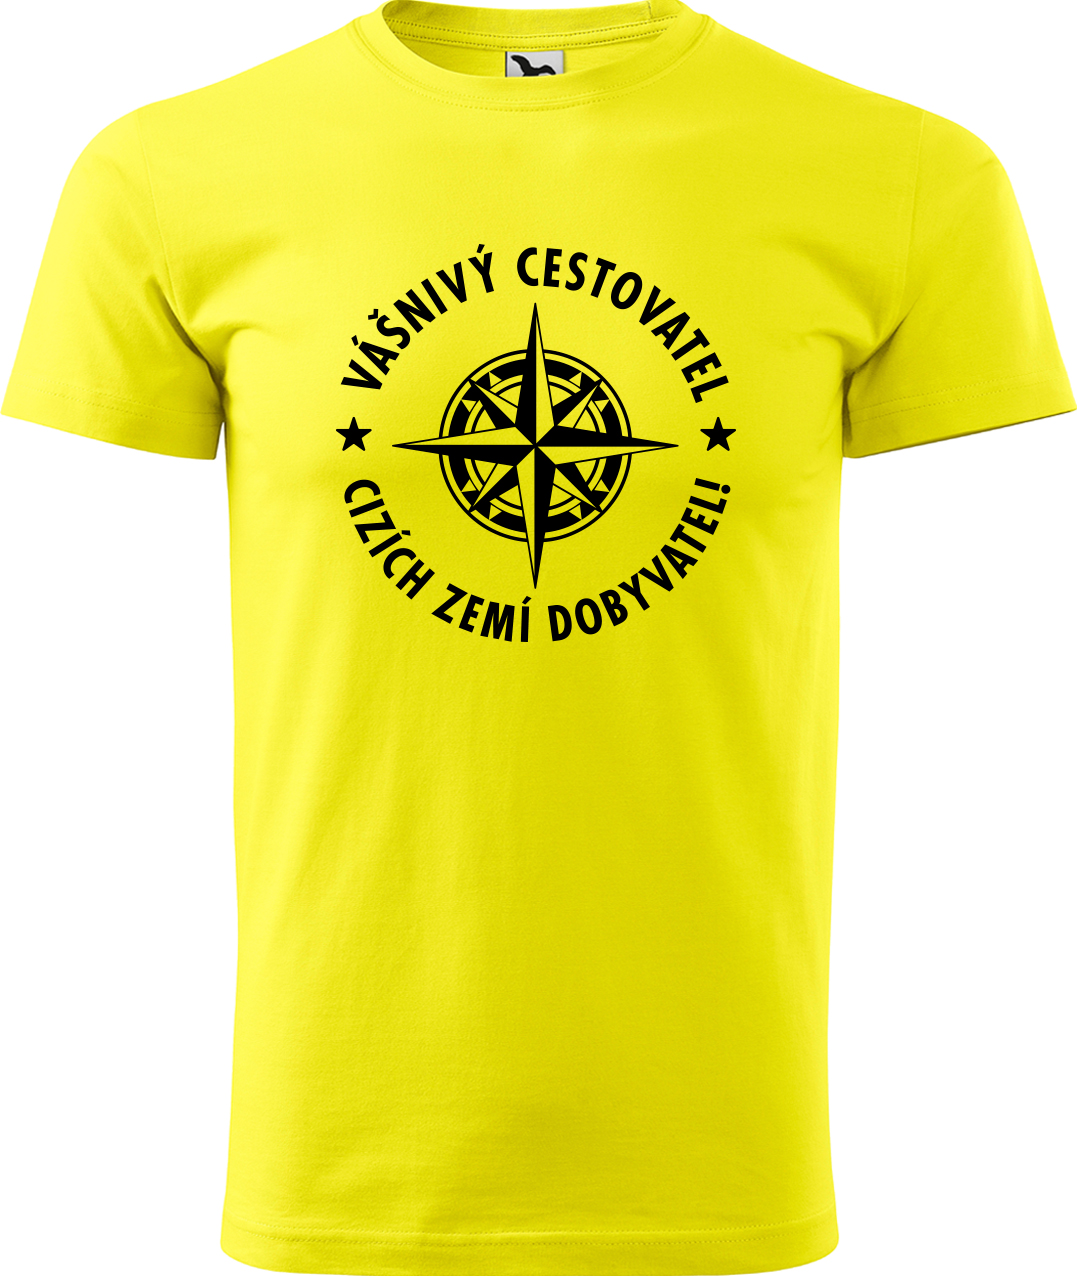 Pánské cestovatelské tričko - Vášnivý cestovatel, cizích zemí dobyvatel Velikost: L, Barva: Žlutá (04), Střih: pánský